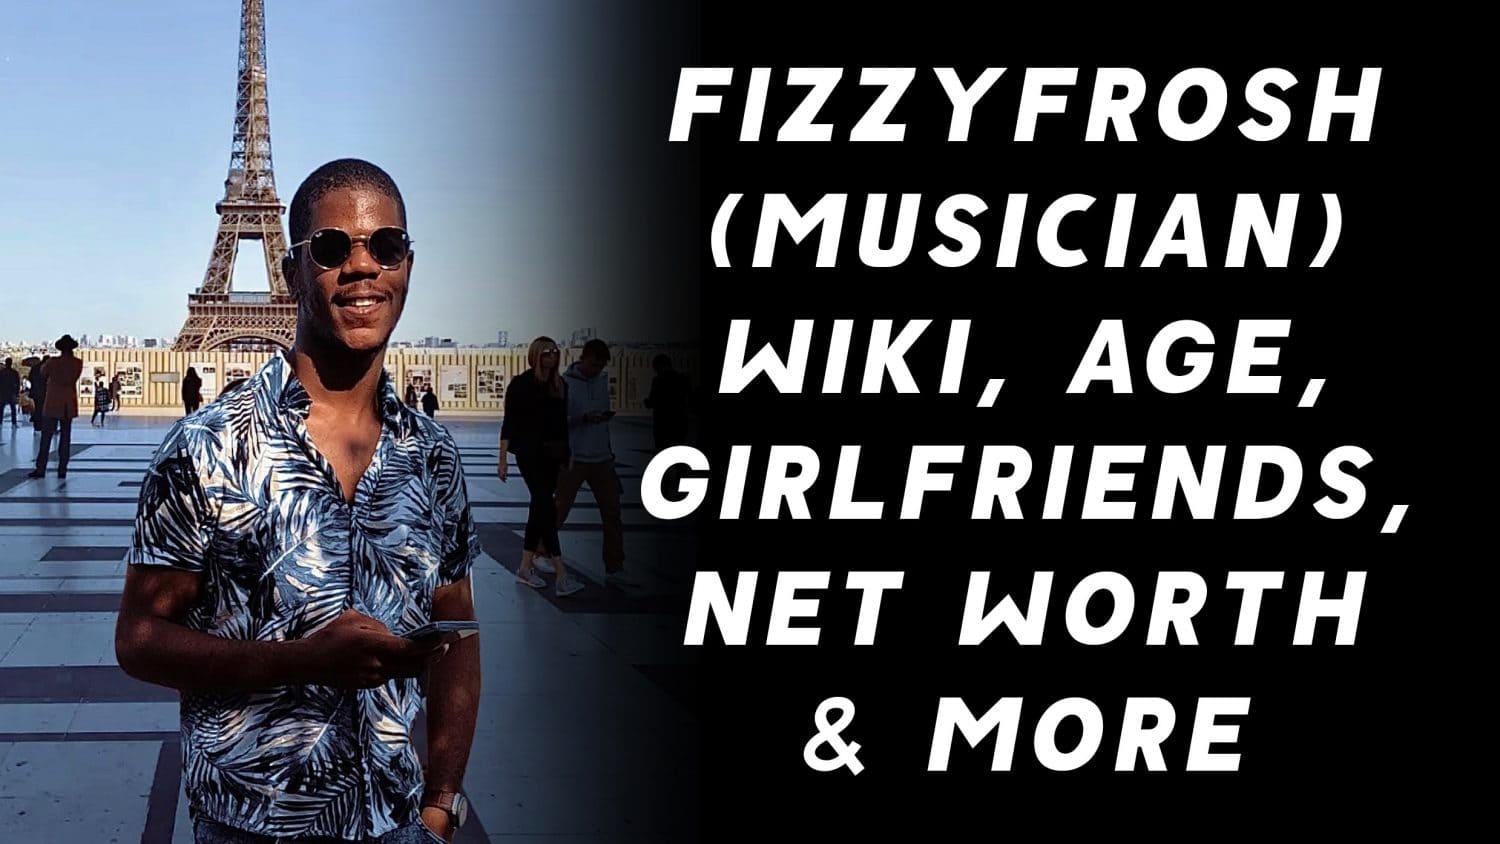 Fizzyfrosh (Musician) Wiki, Age, Girlfriends, Net Worth & More 1